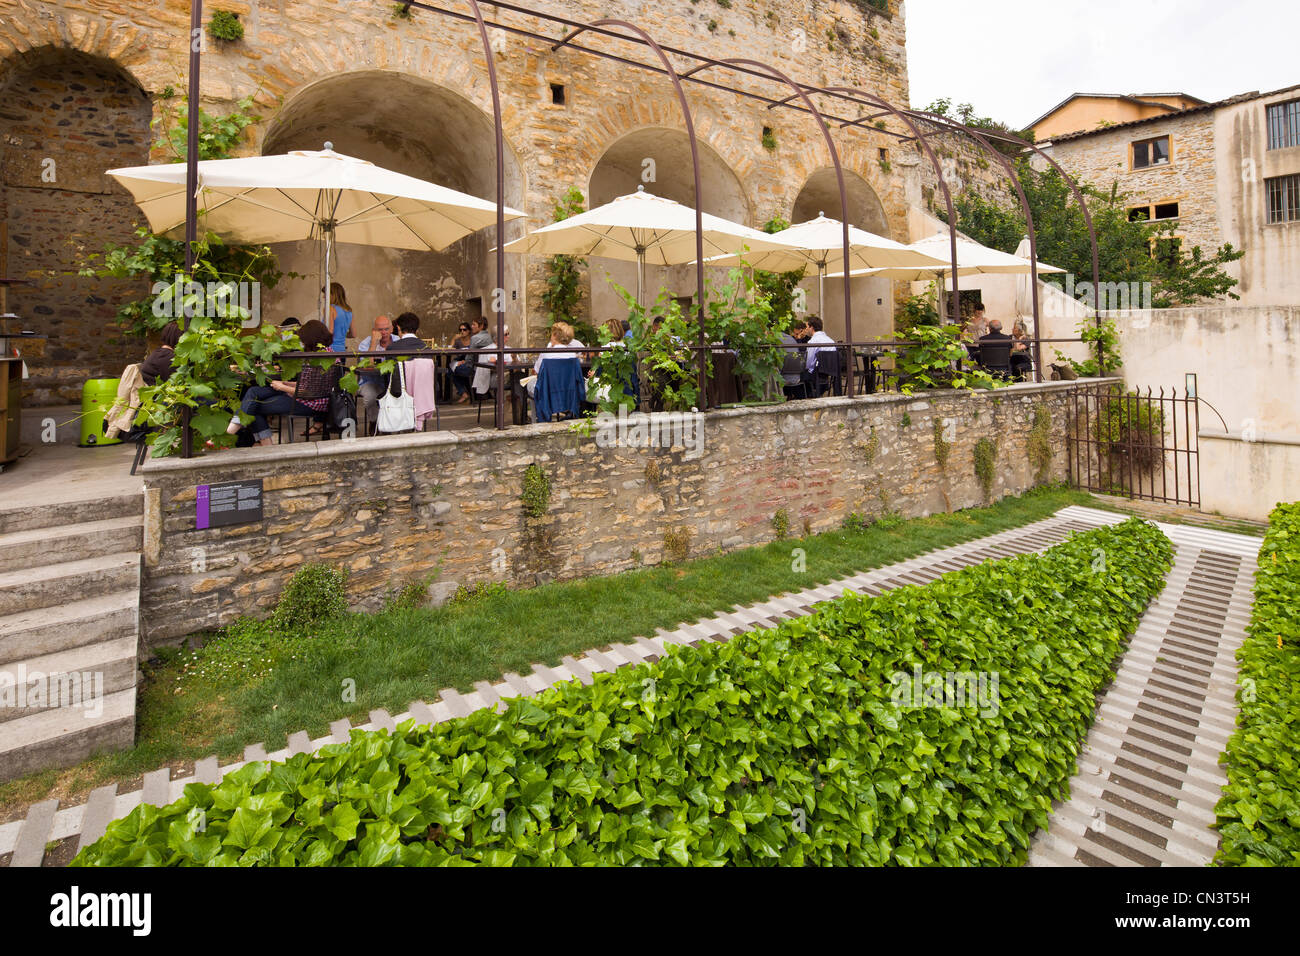 Frankreich, Rhone, Restaurant Gadagne Museen, Lyon, historische Stätte als Weltkulturerbe der UNESCO gelistet Stockfoto